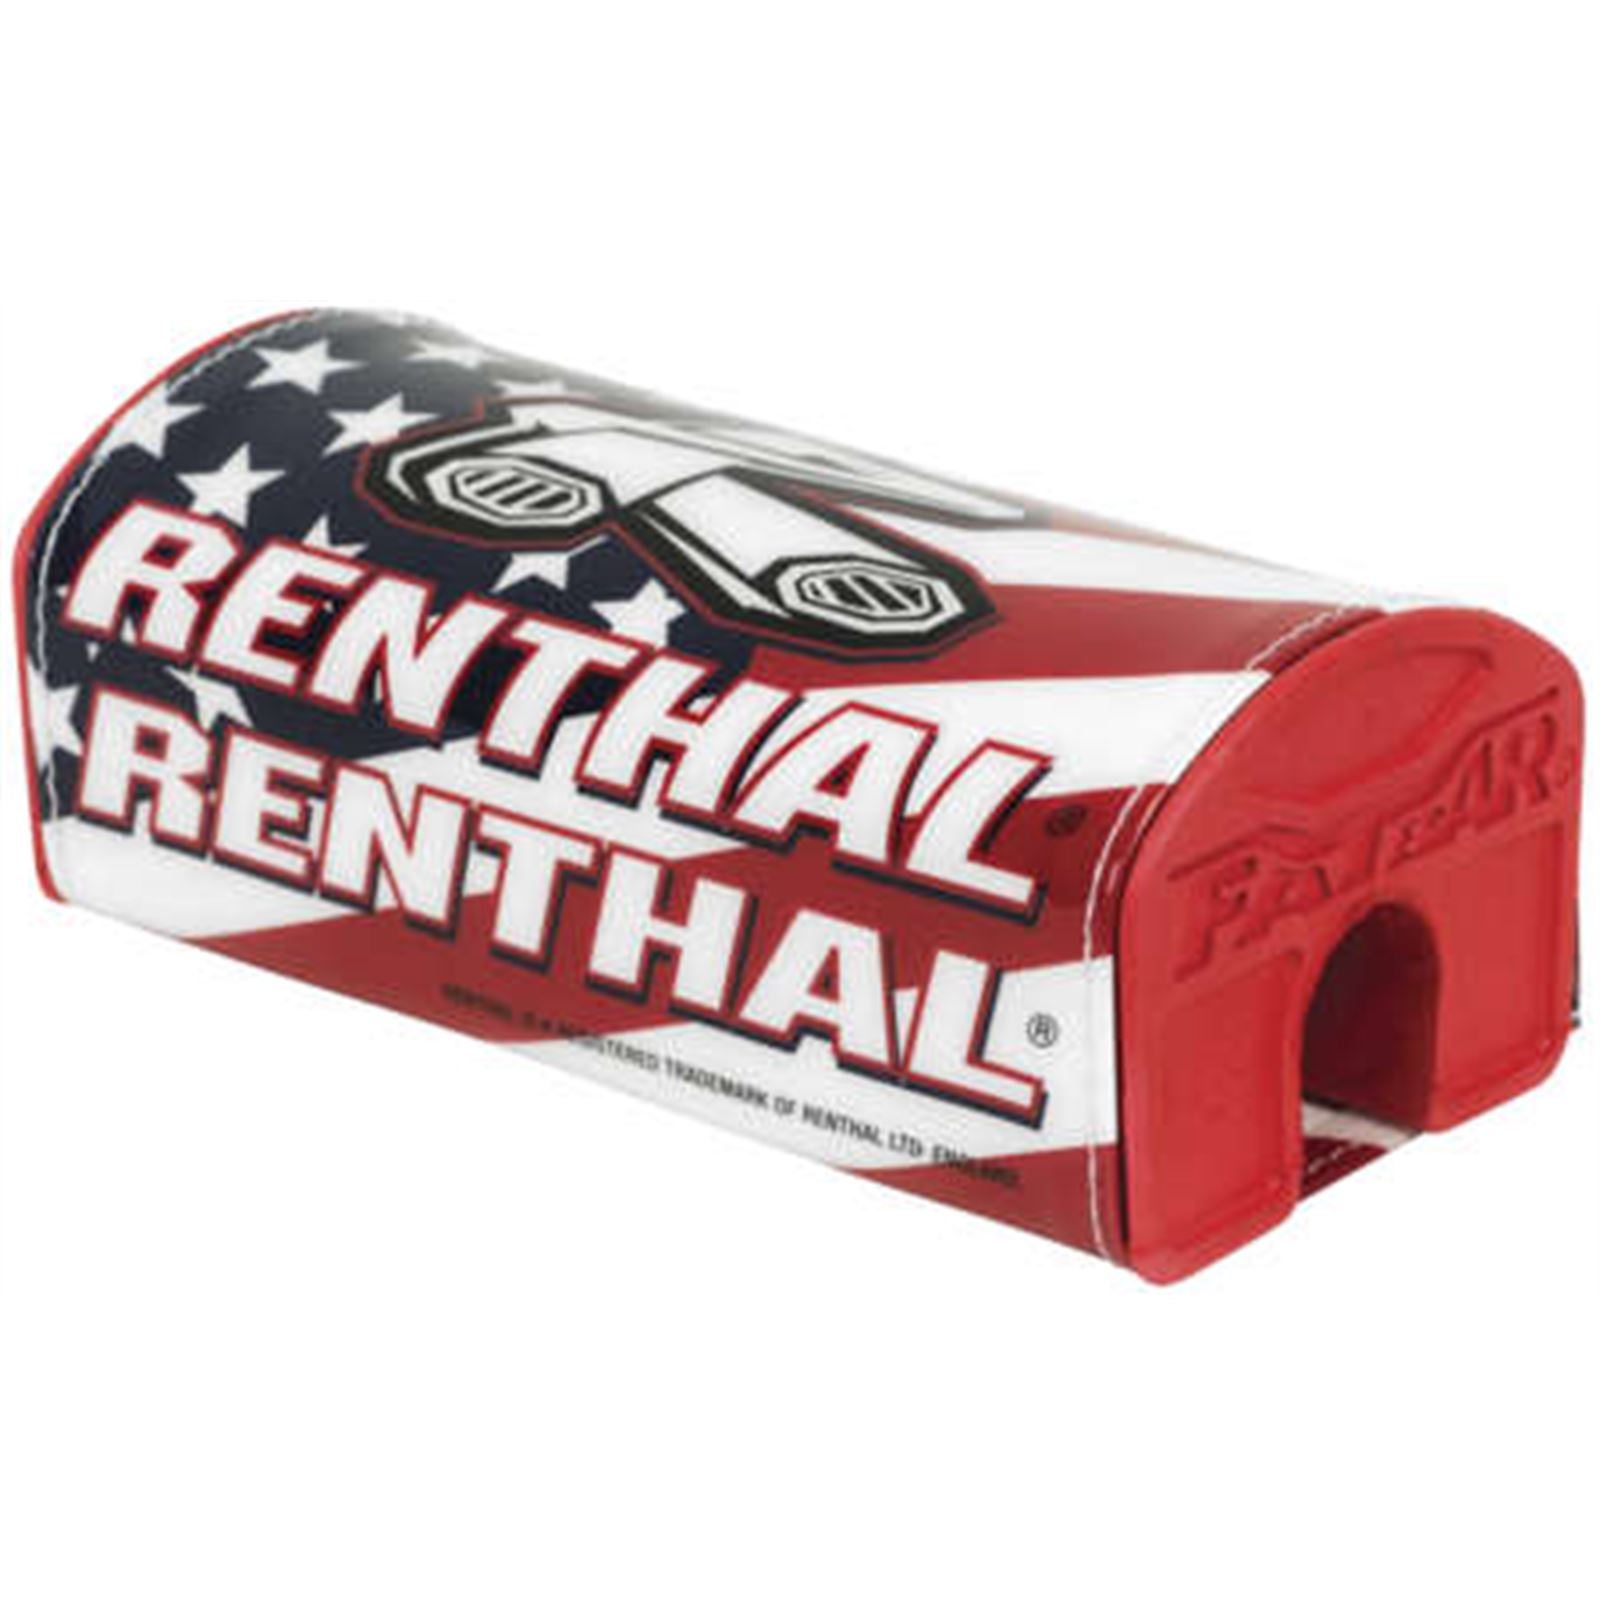 Renthal USA Flag Renthal Fatbar™ Pad